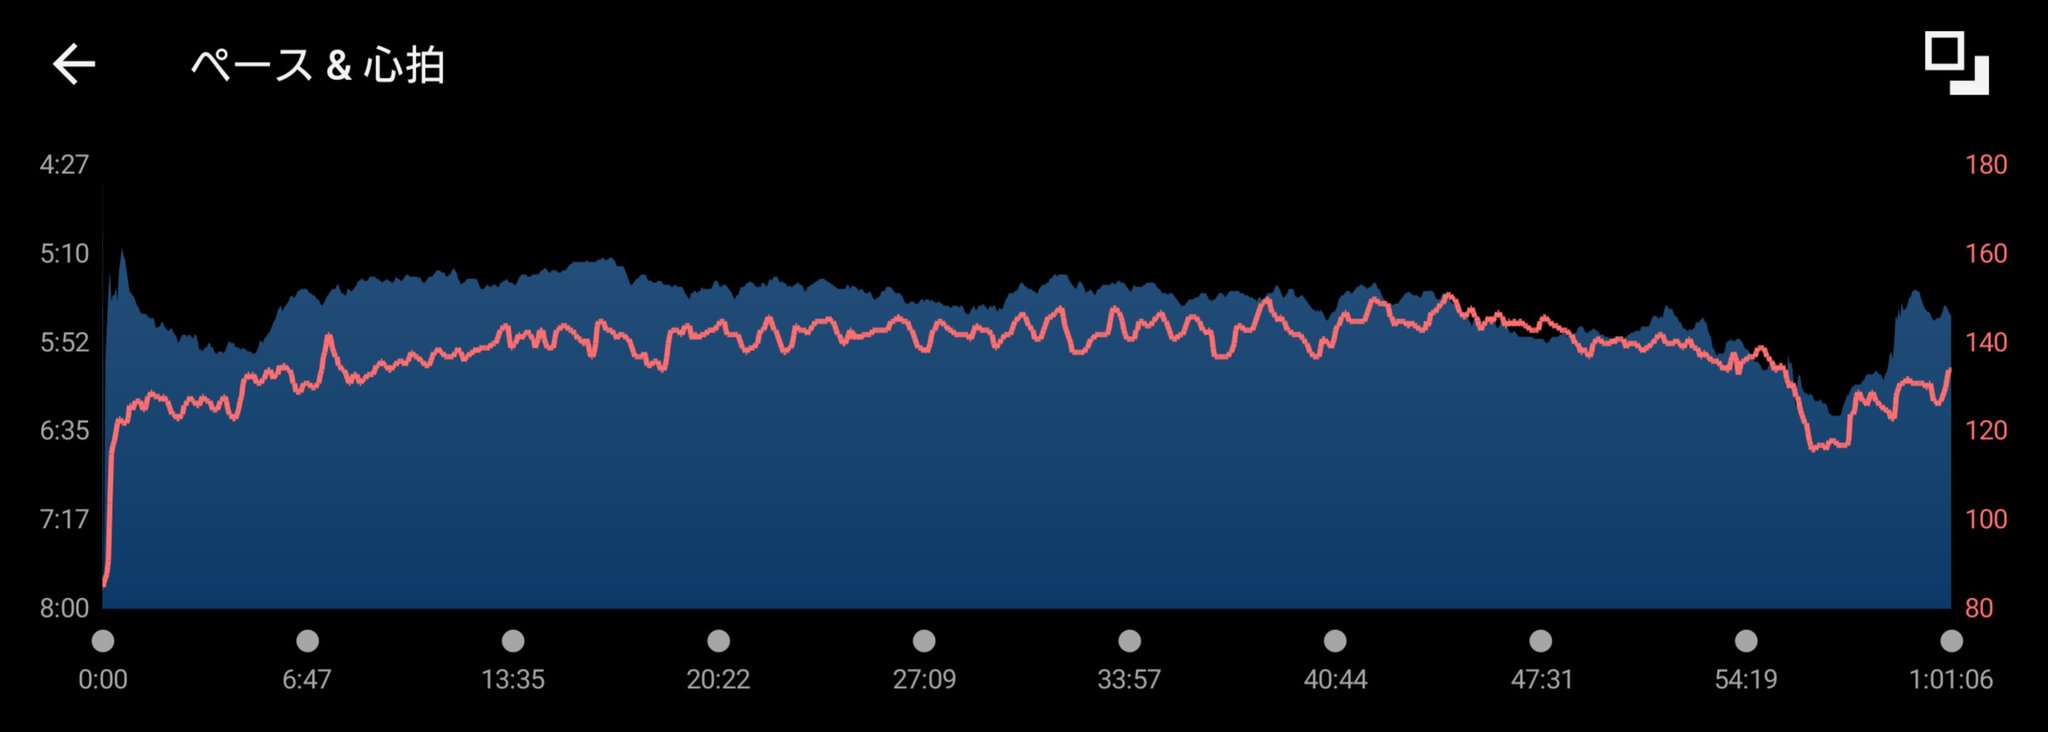 サブ3ランナーの ガーミンのデータ さが桜マラソンテーパリング週 最終練習 1時間ジョグ (11kmジョグ) 